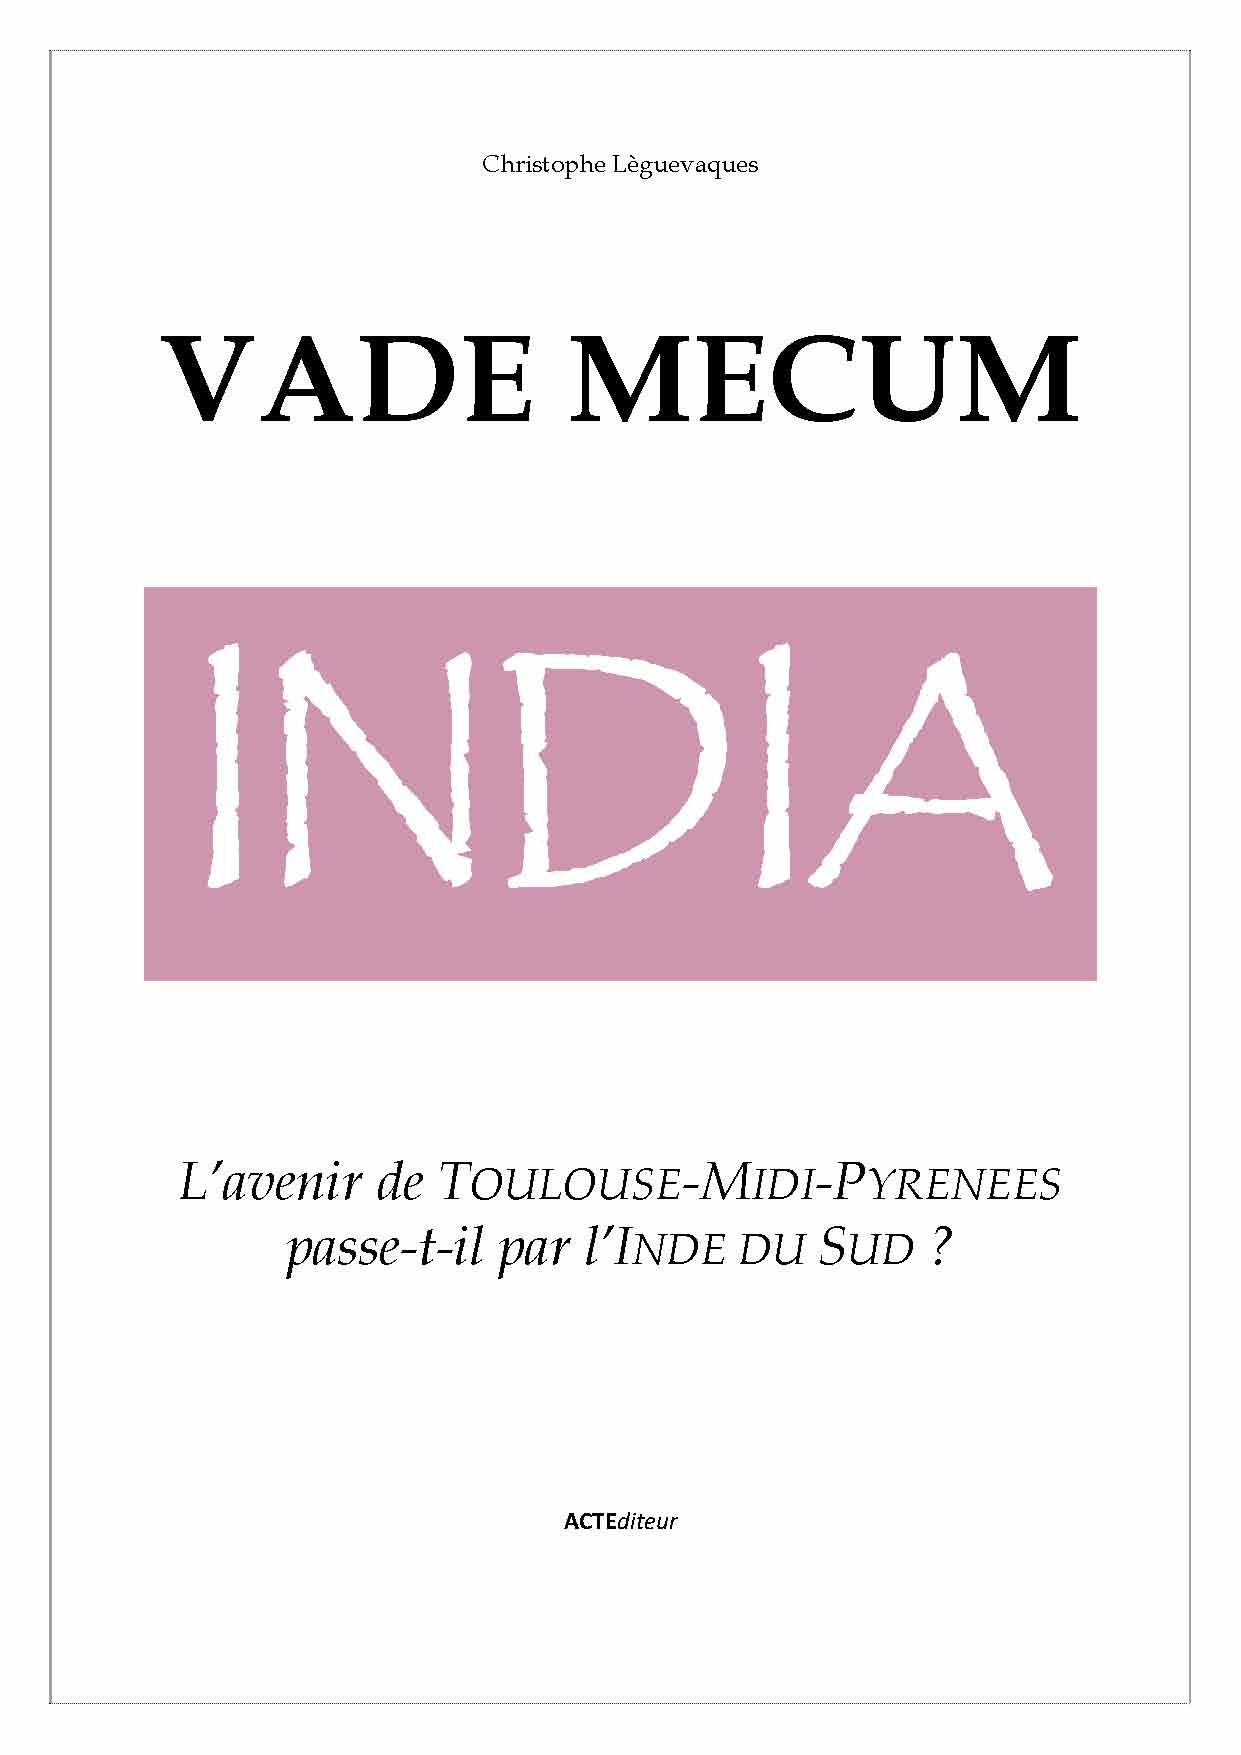 VADE MECUM INDIA